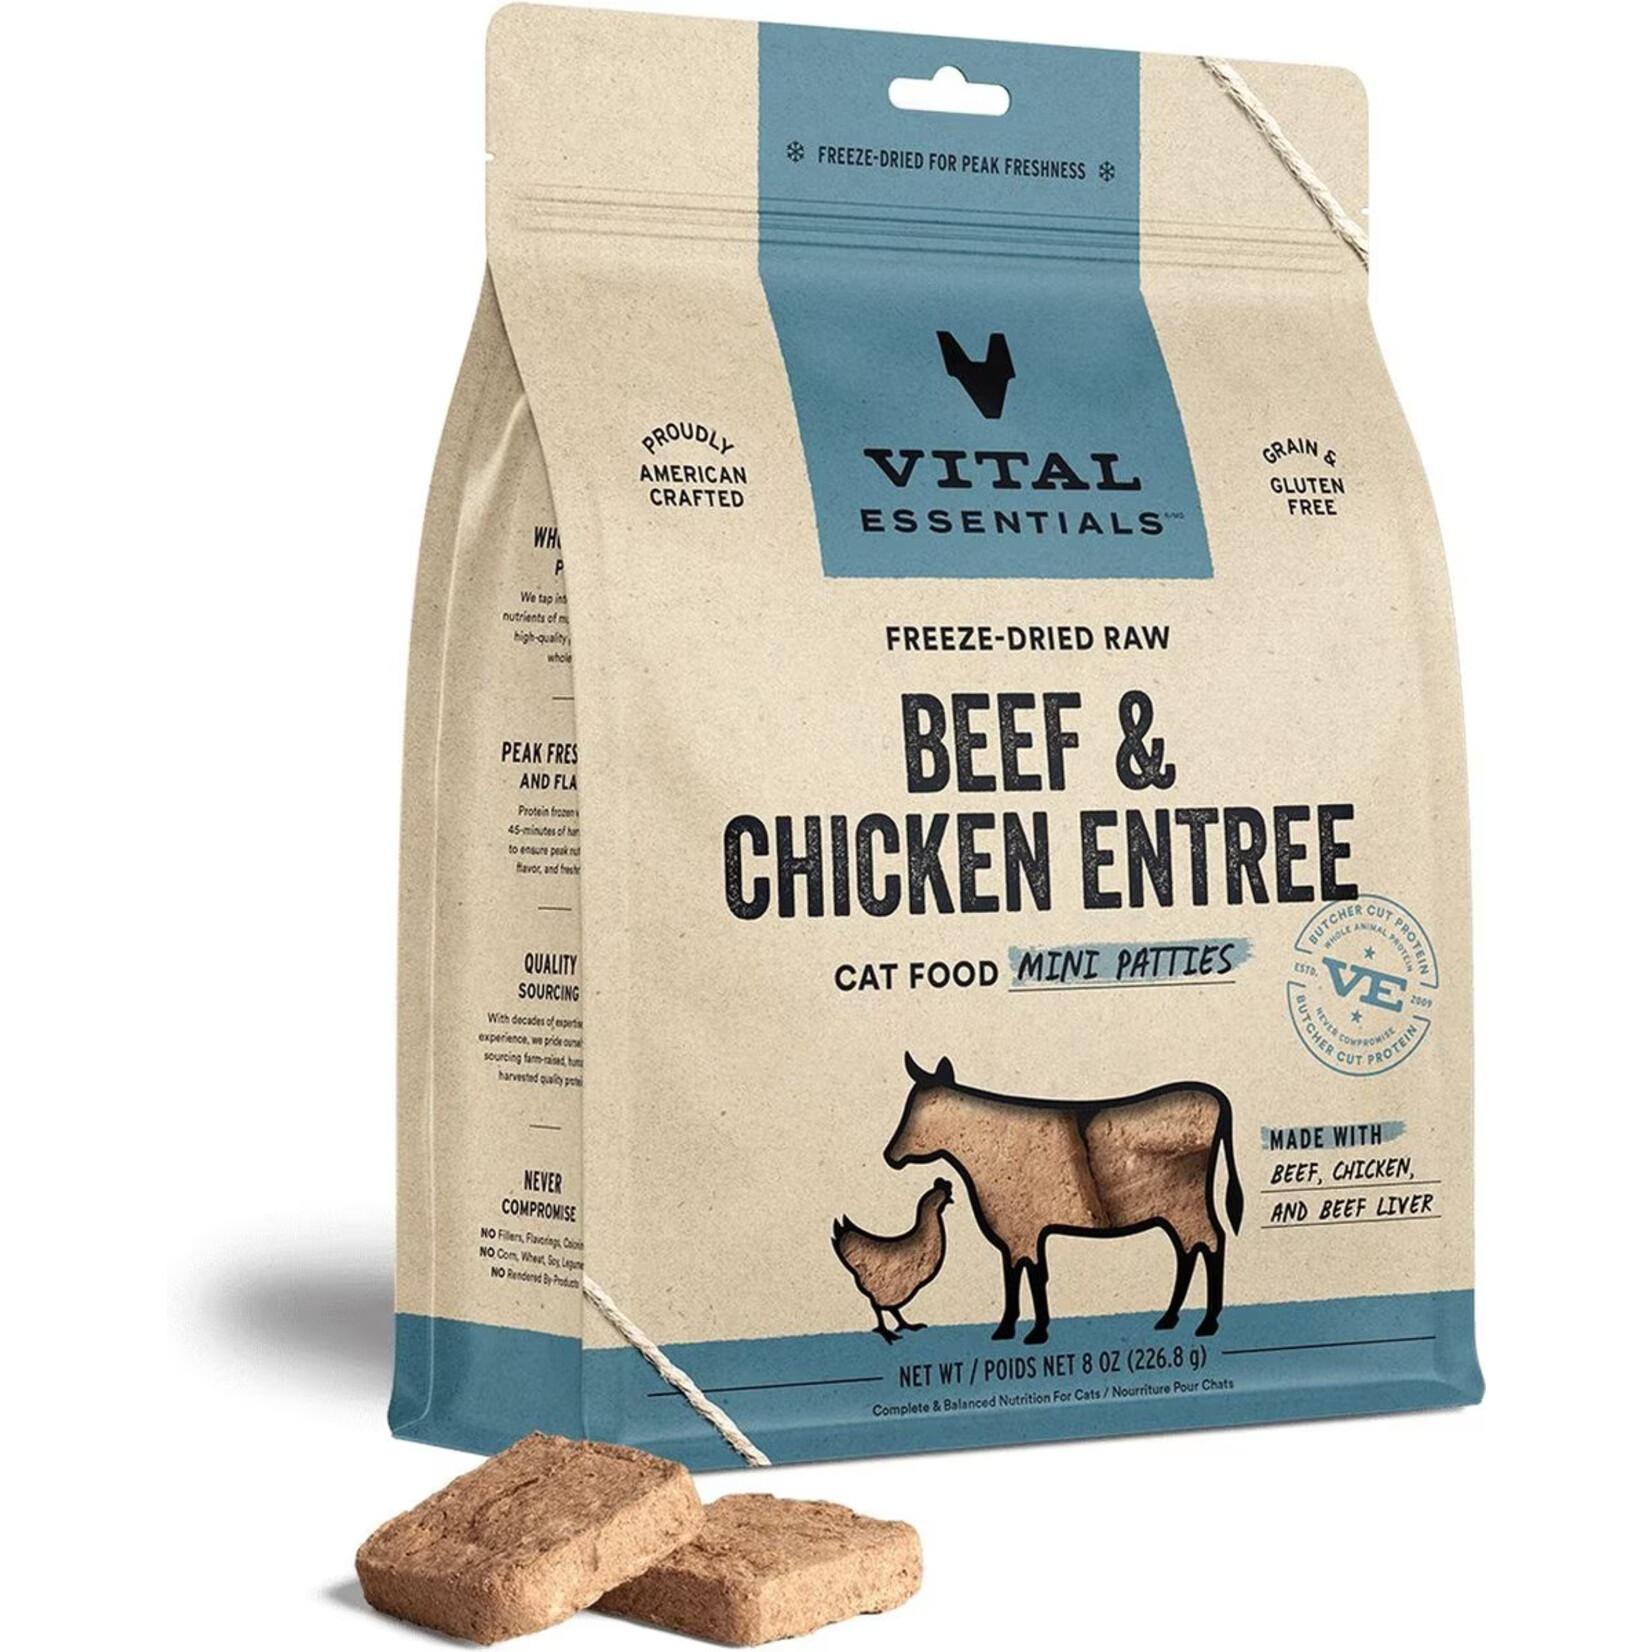 Vital Essentials Vital Essentials Freeze-Dried Raw Mini Patties - Beef & Chicken Entree for Cats